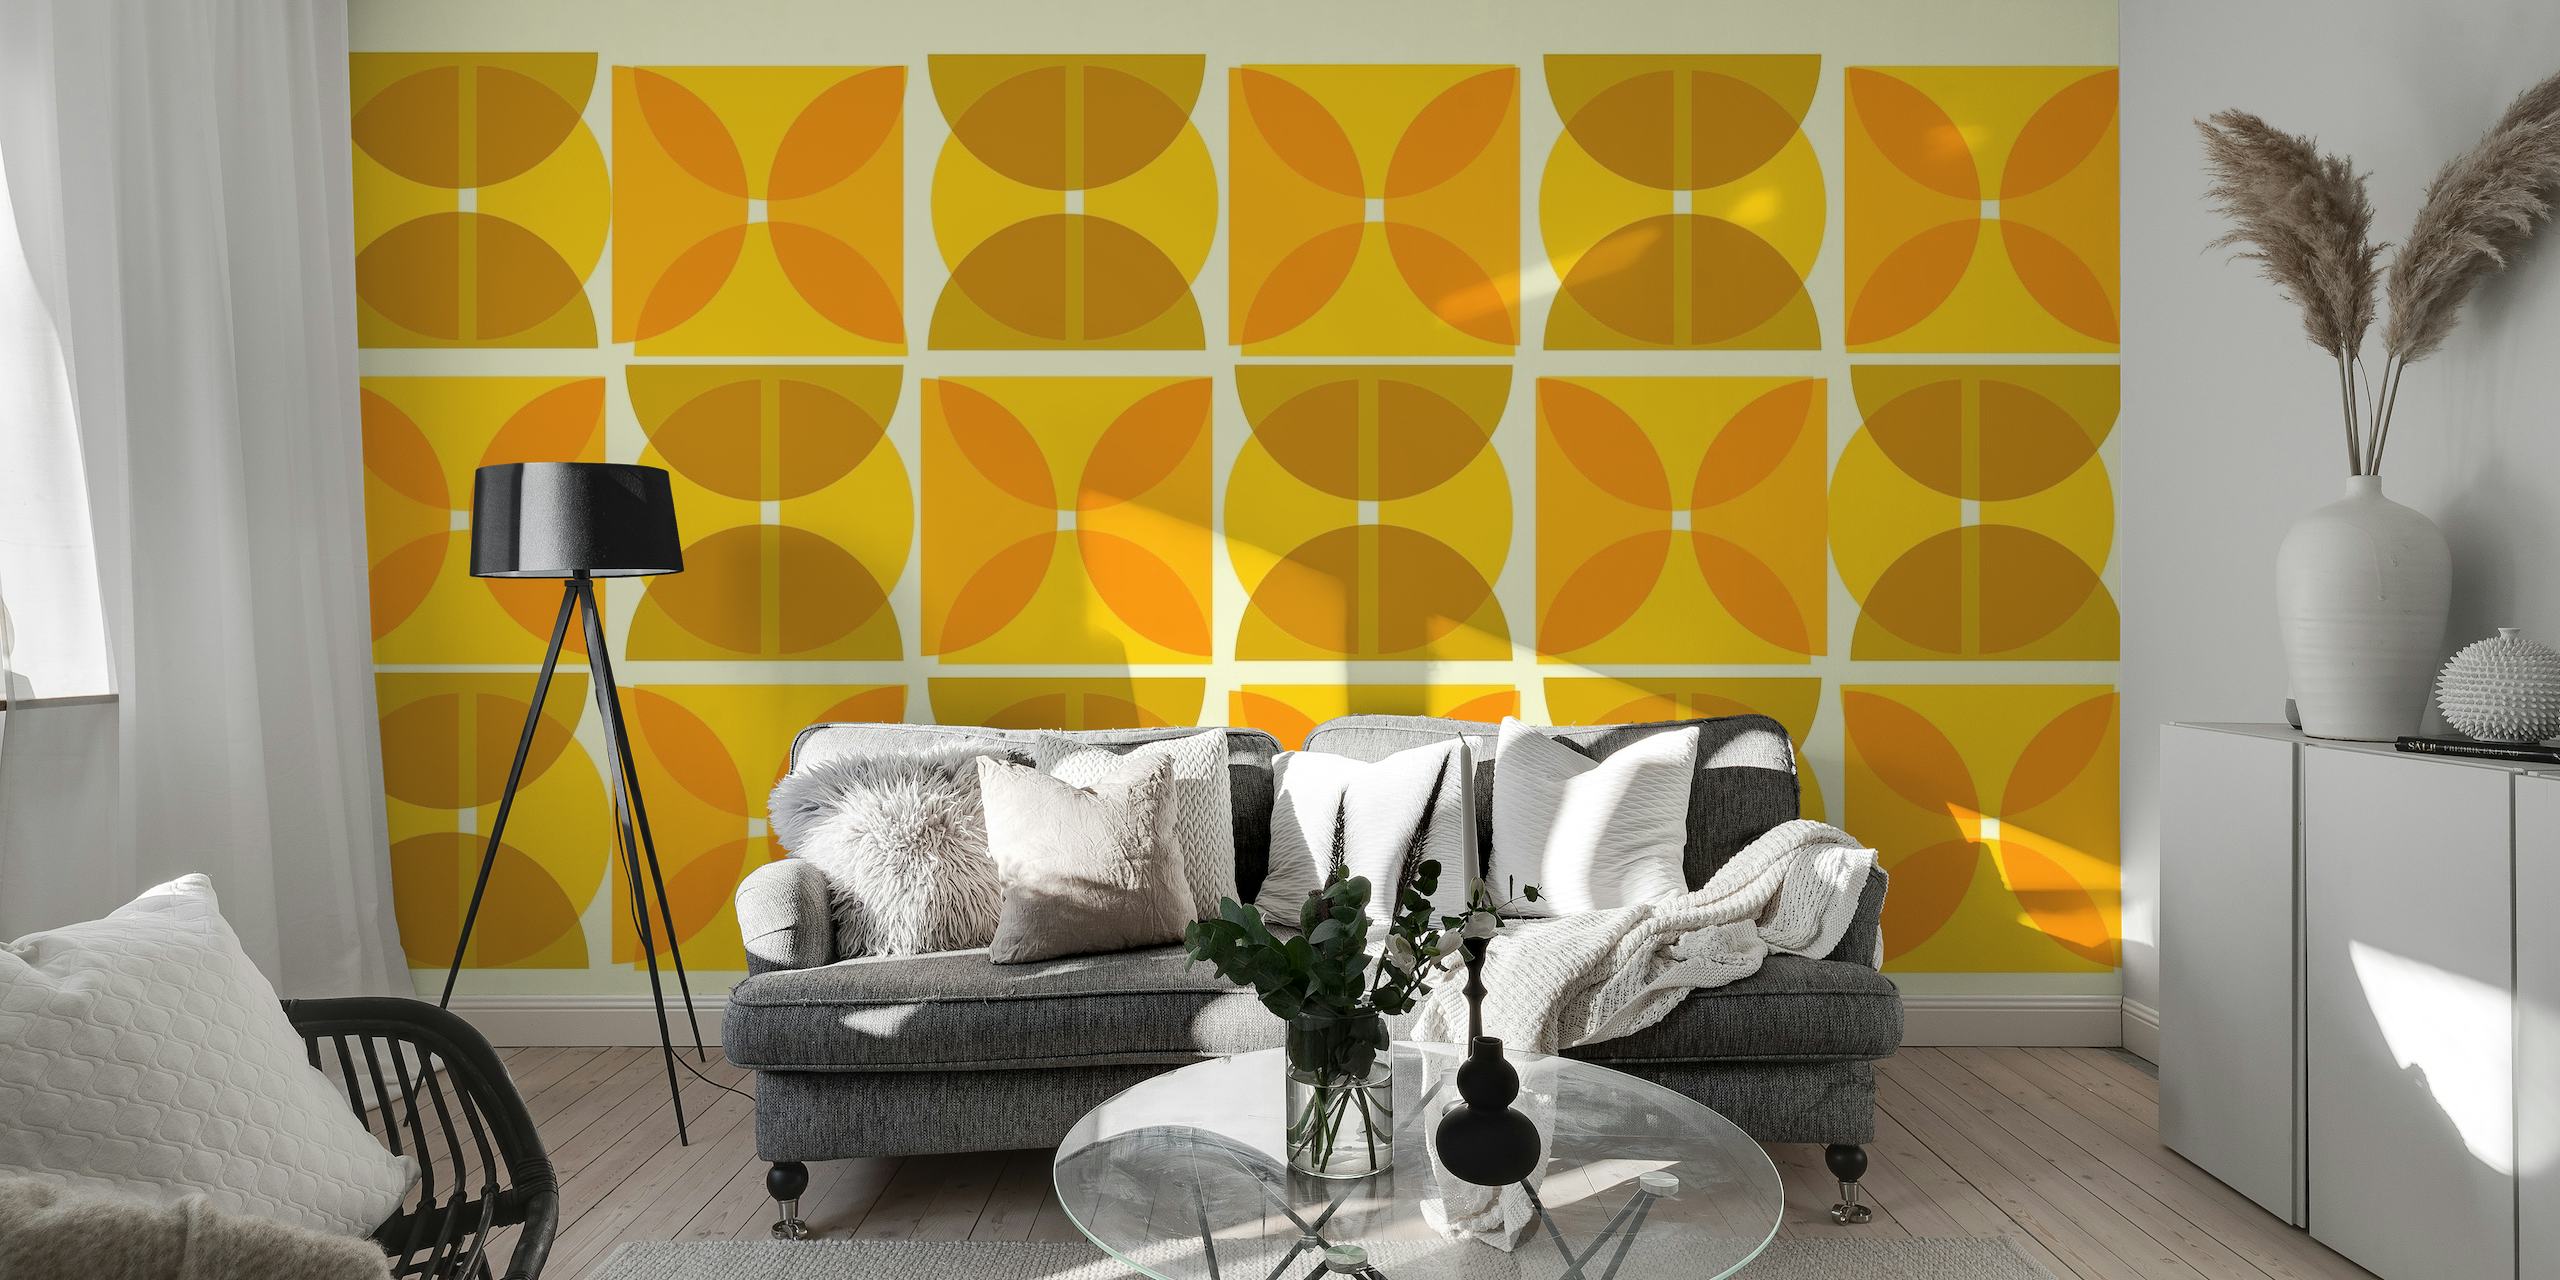 Mural de parede inspirado na Bauhaus com formas geométricas abstratas em tons de amarelo e marrom